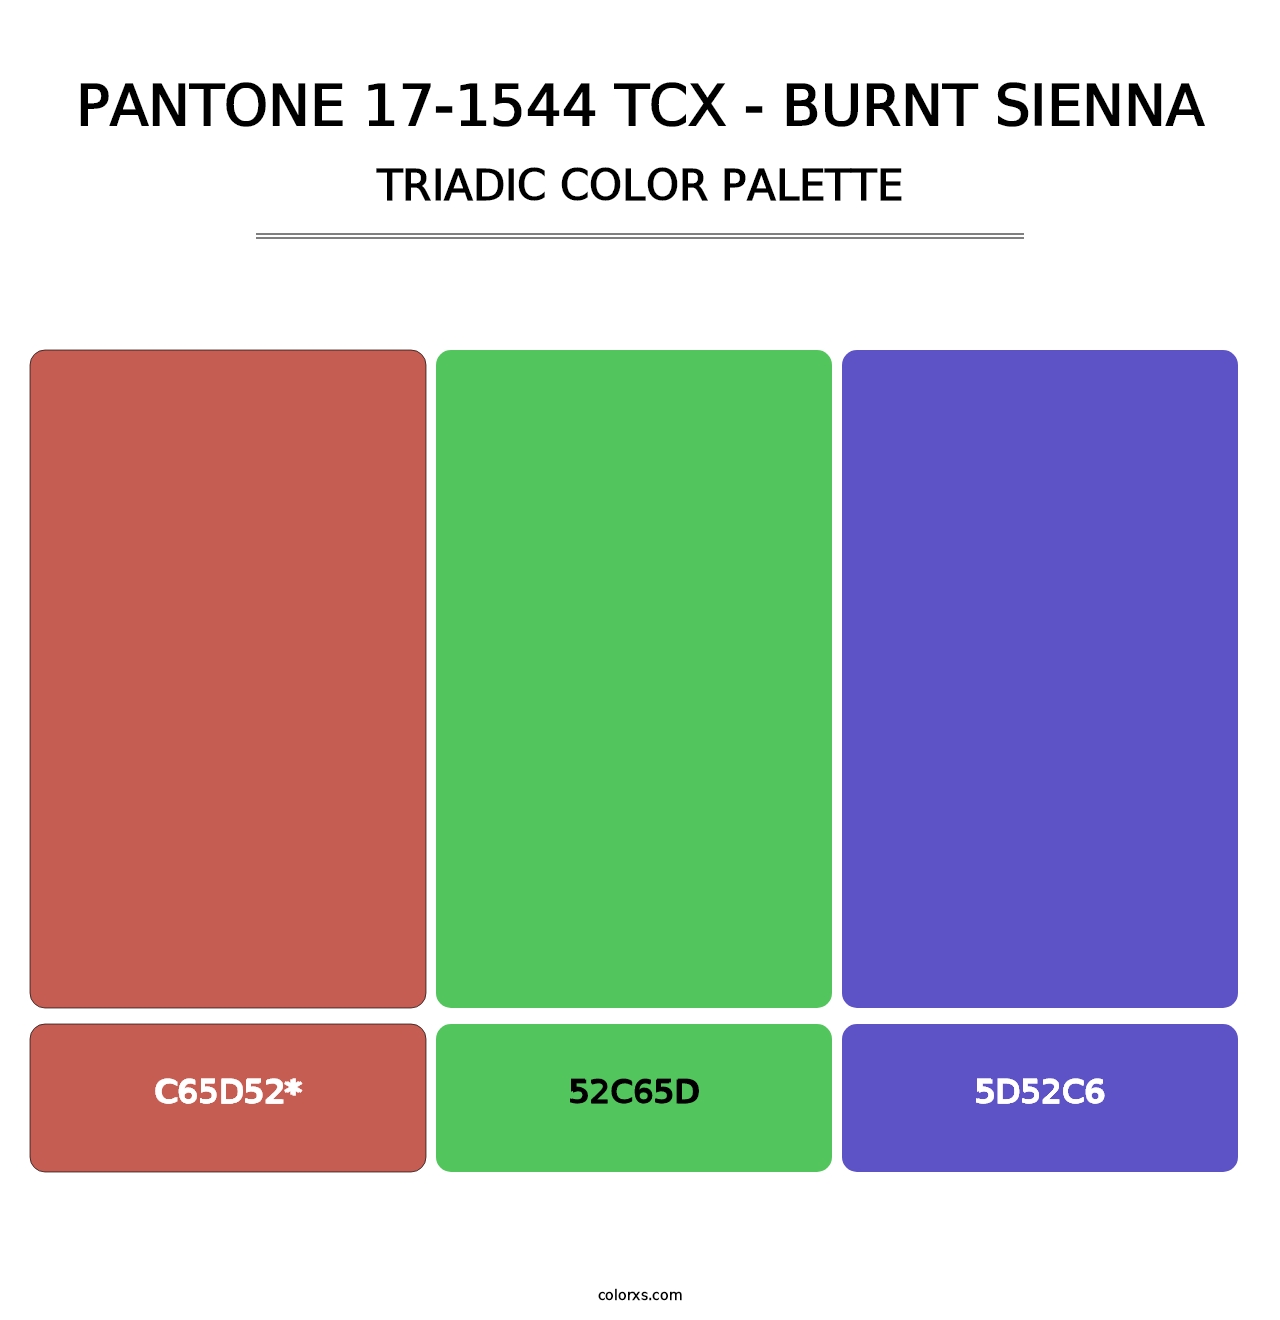 PANTONE 17-1544 TCX - Burnt Sienna - Triadic Color Palette